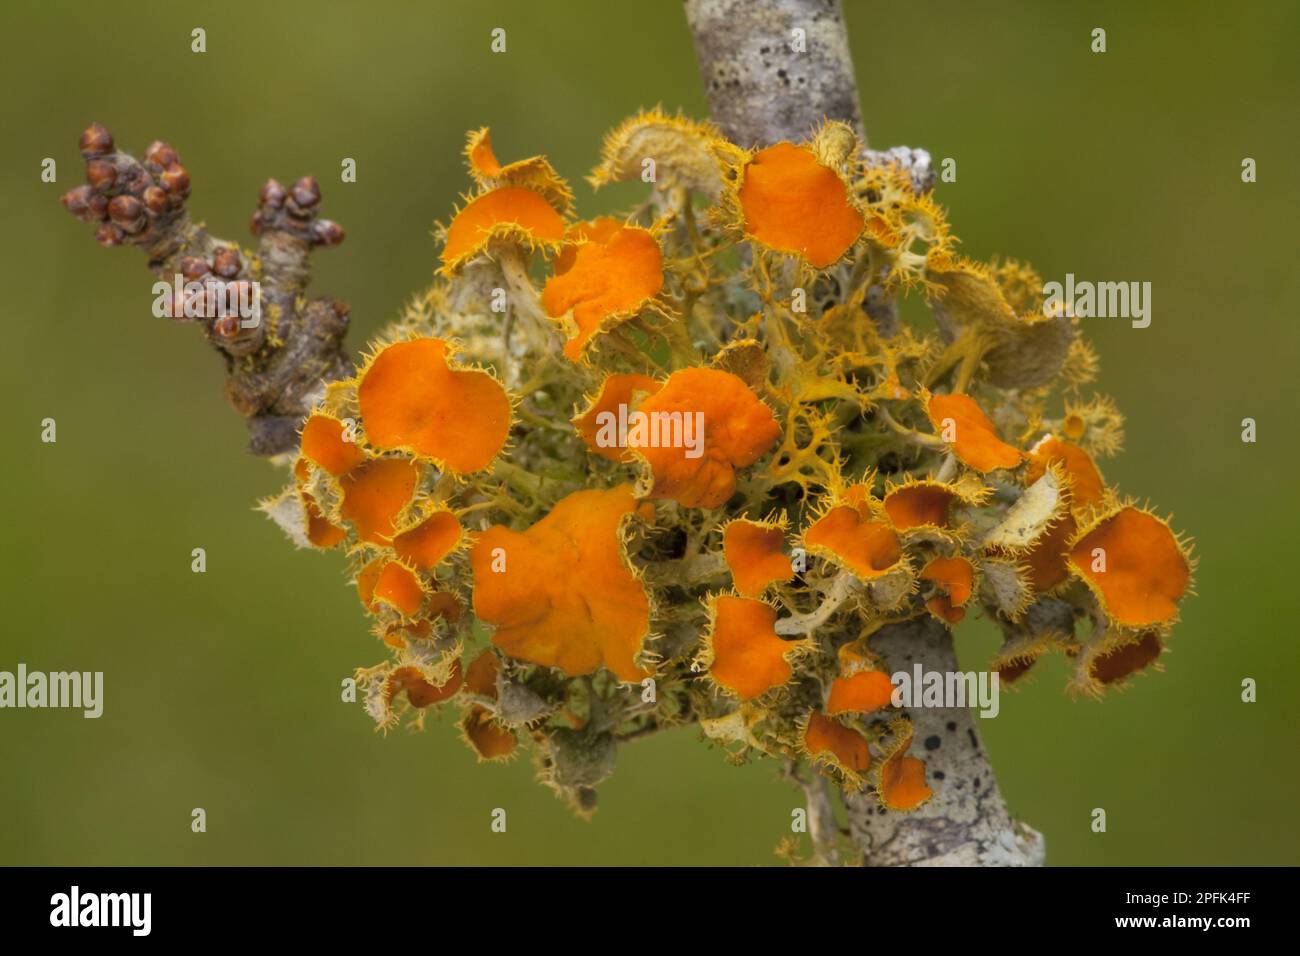 Lichen doré (Teloschistes chrysophthalmus) croissant de façon luxuriante sur les brindilles de noir dans des conditions humides et non polluées, Bretagne, France, Europe Banque D'Images